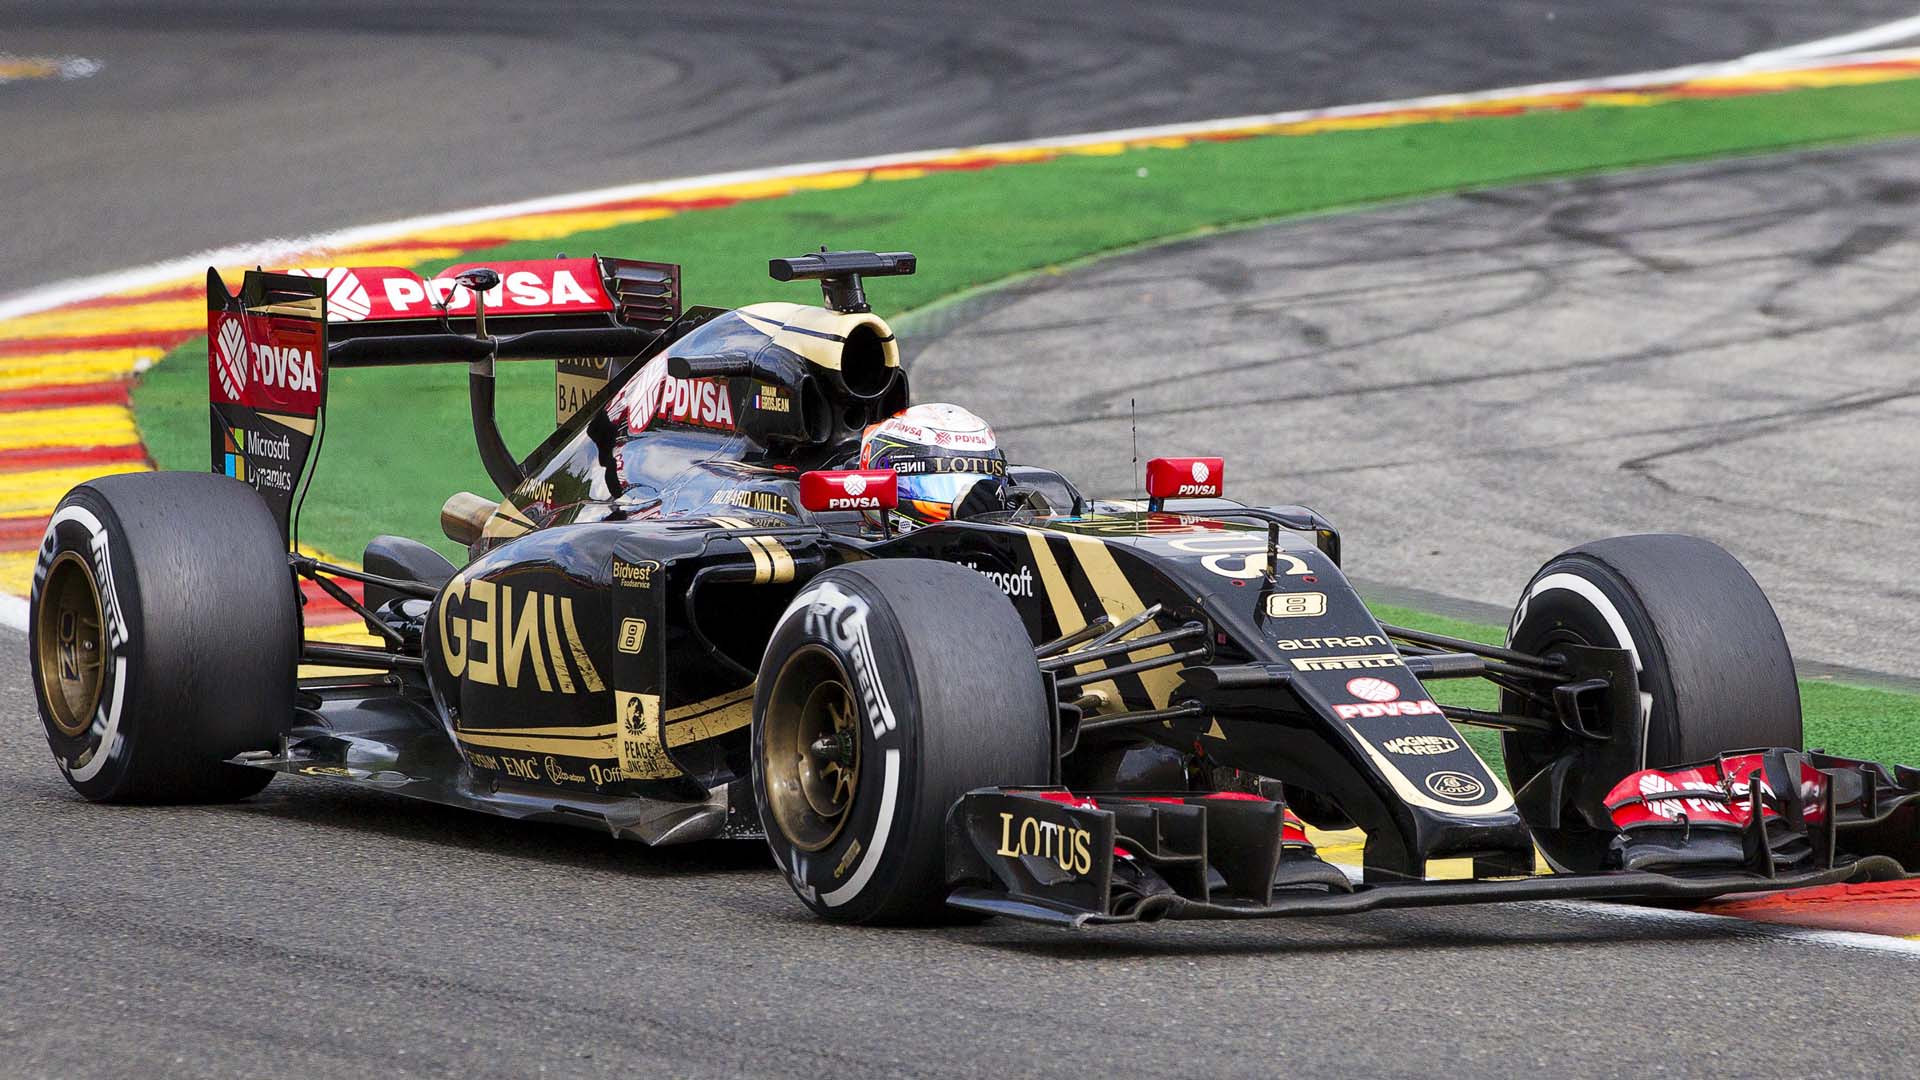 El piloto venezolano correrá desde la posición 16 con la leyenda “Paz para Paris” en la carrera del Gran Premio de Brasil